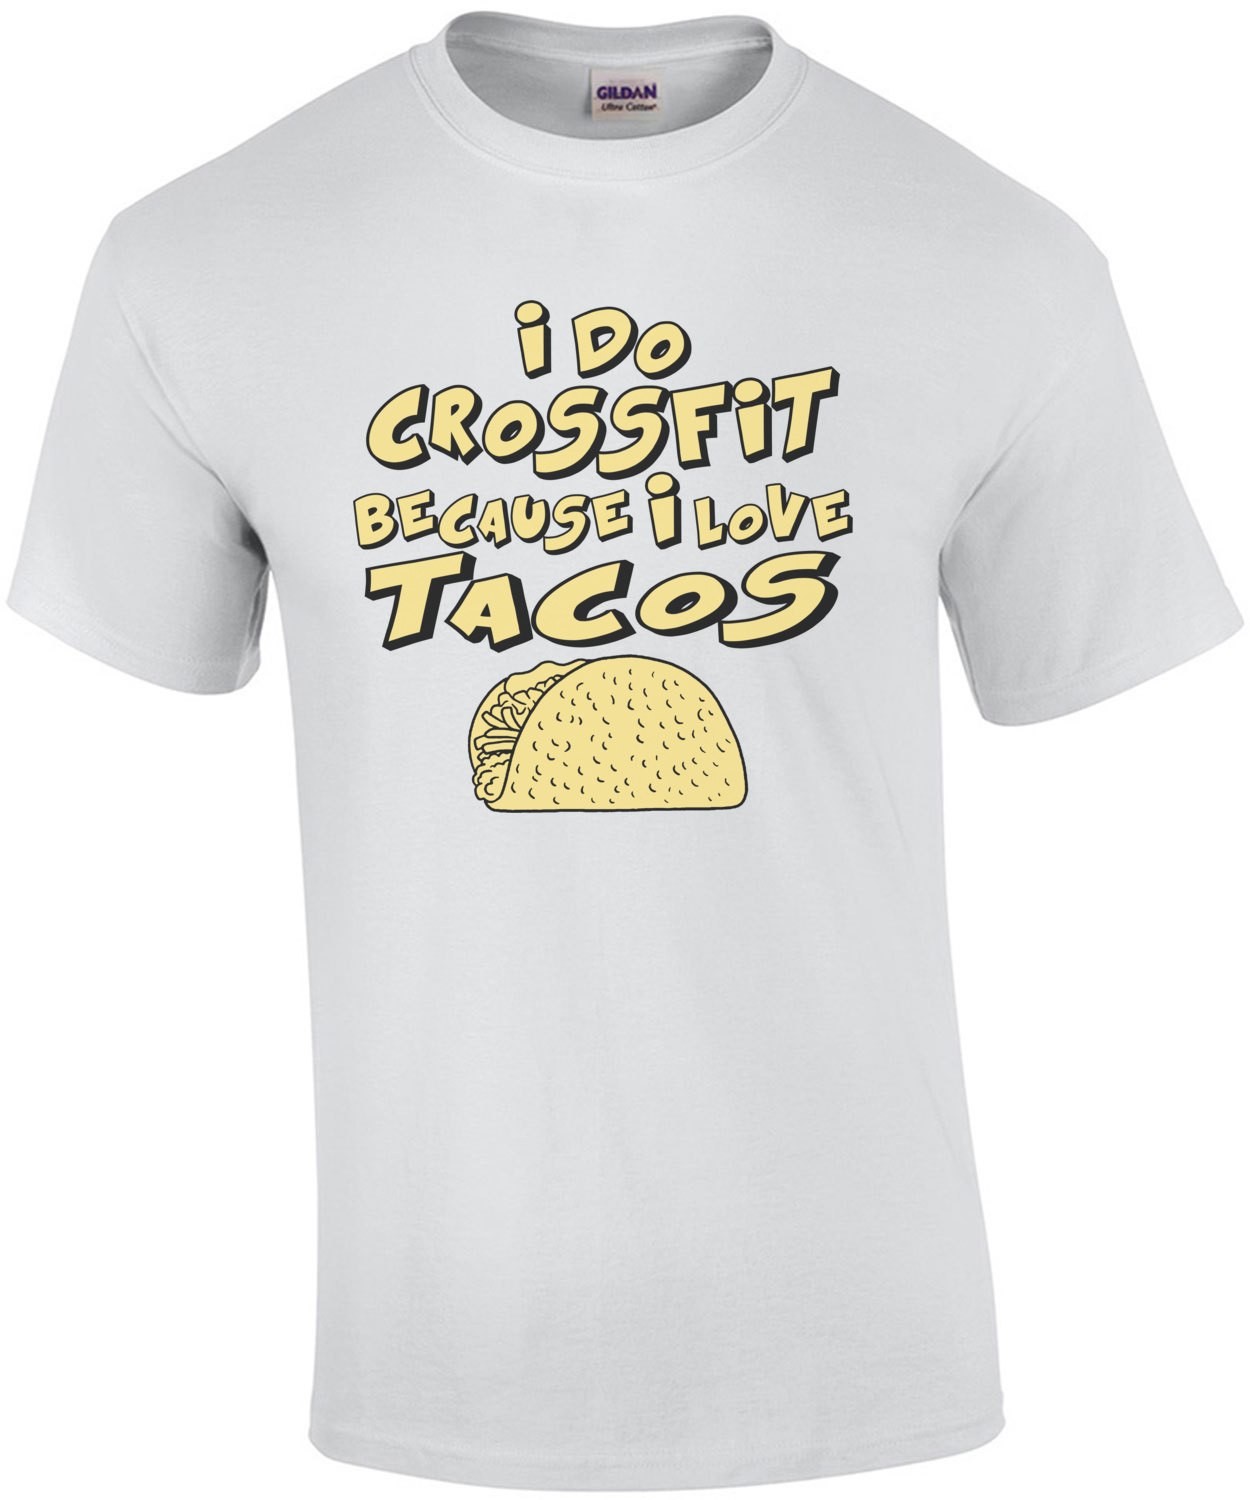 I Do Crossfit Because I Love Tacos T-Shirt